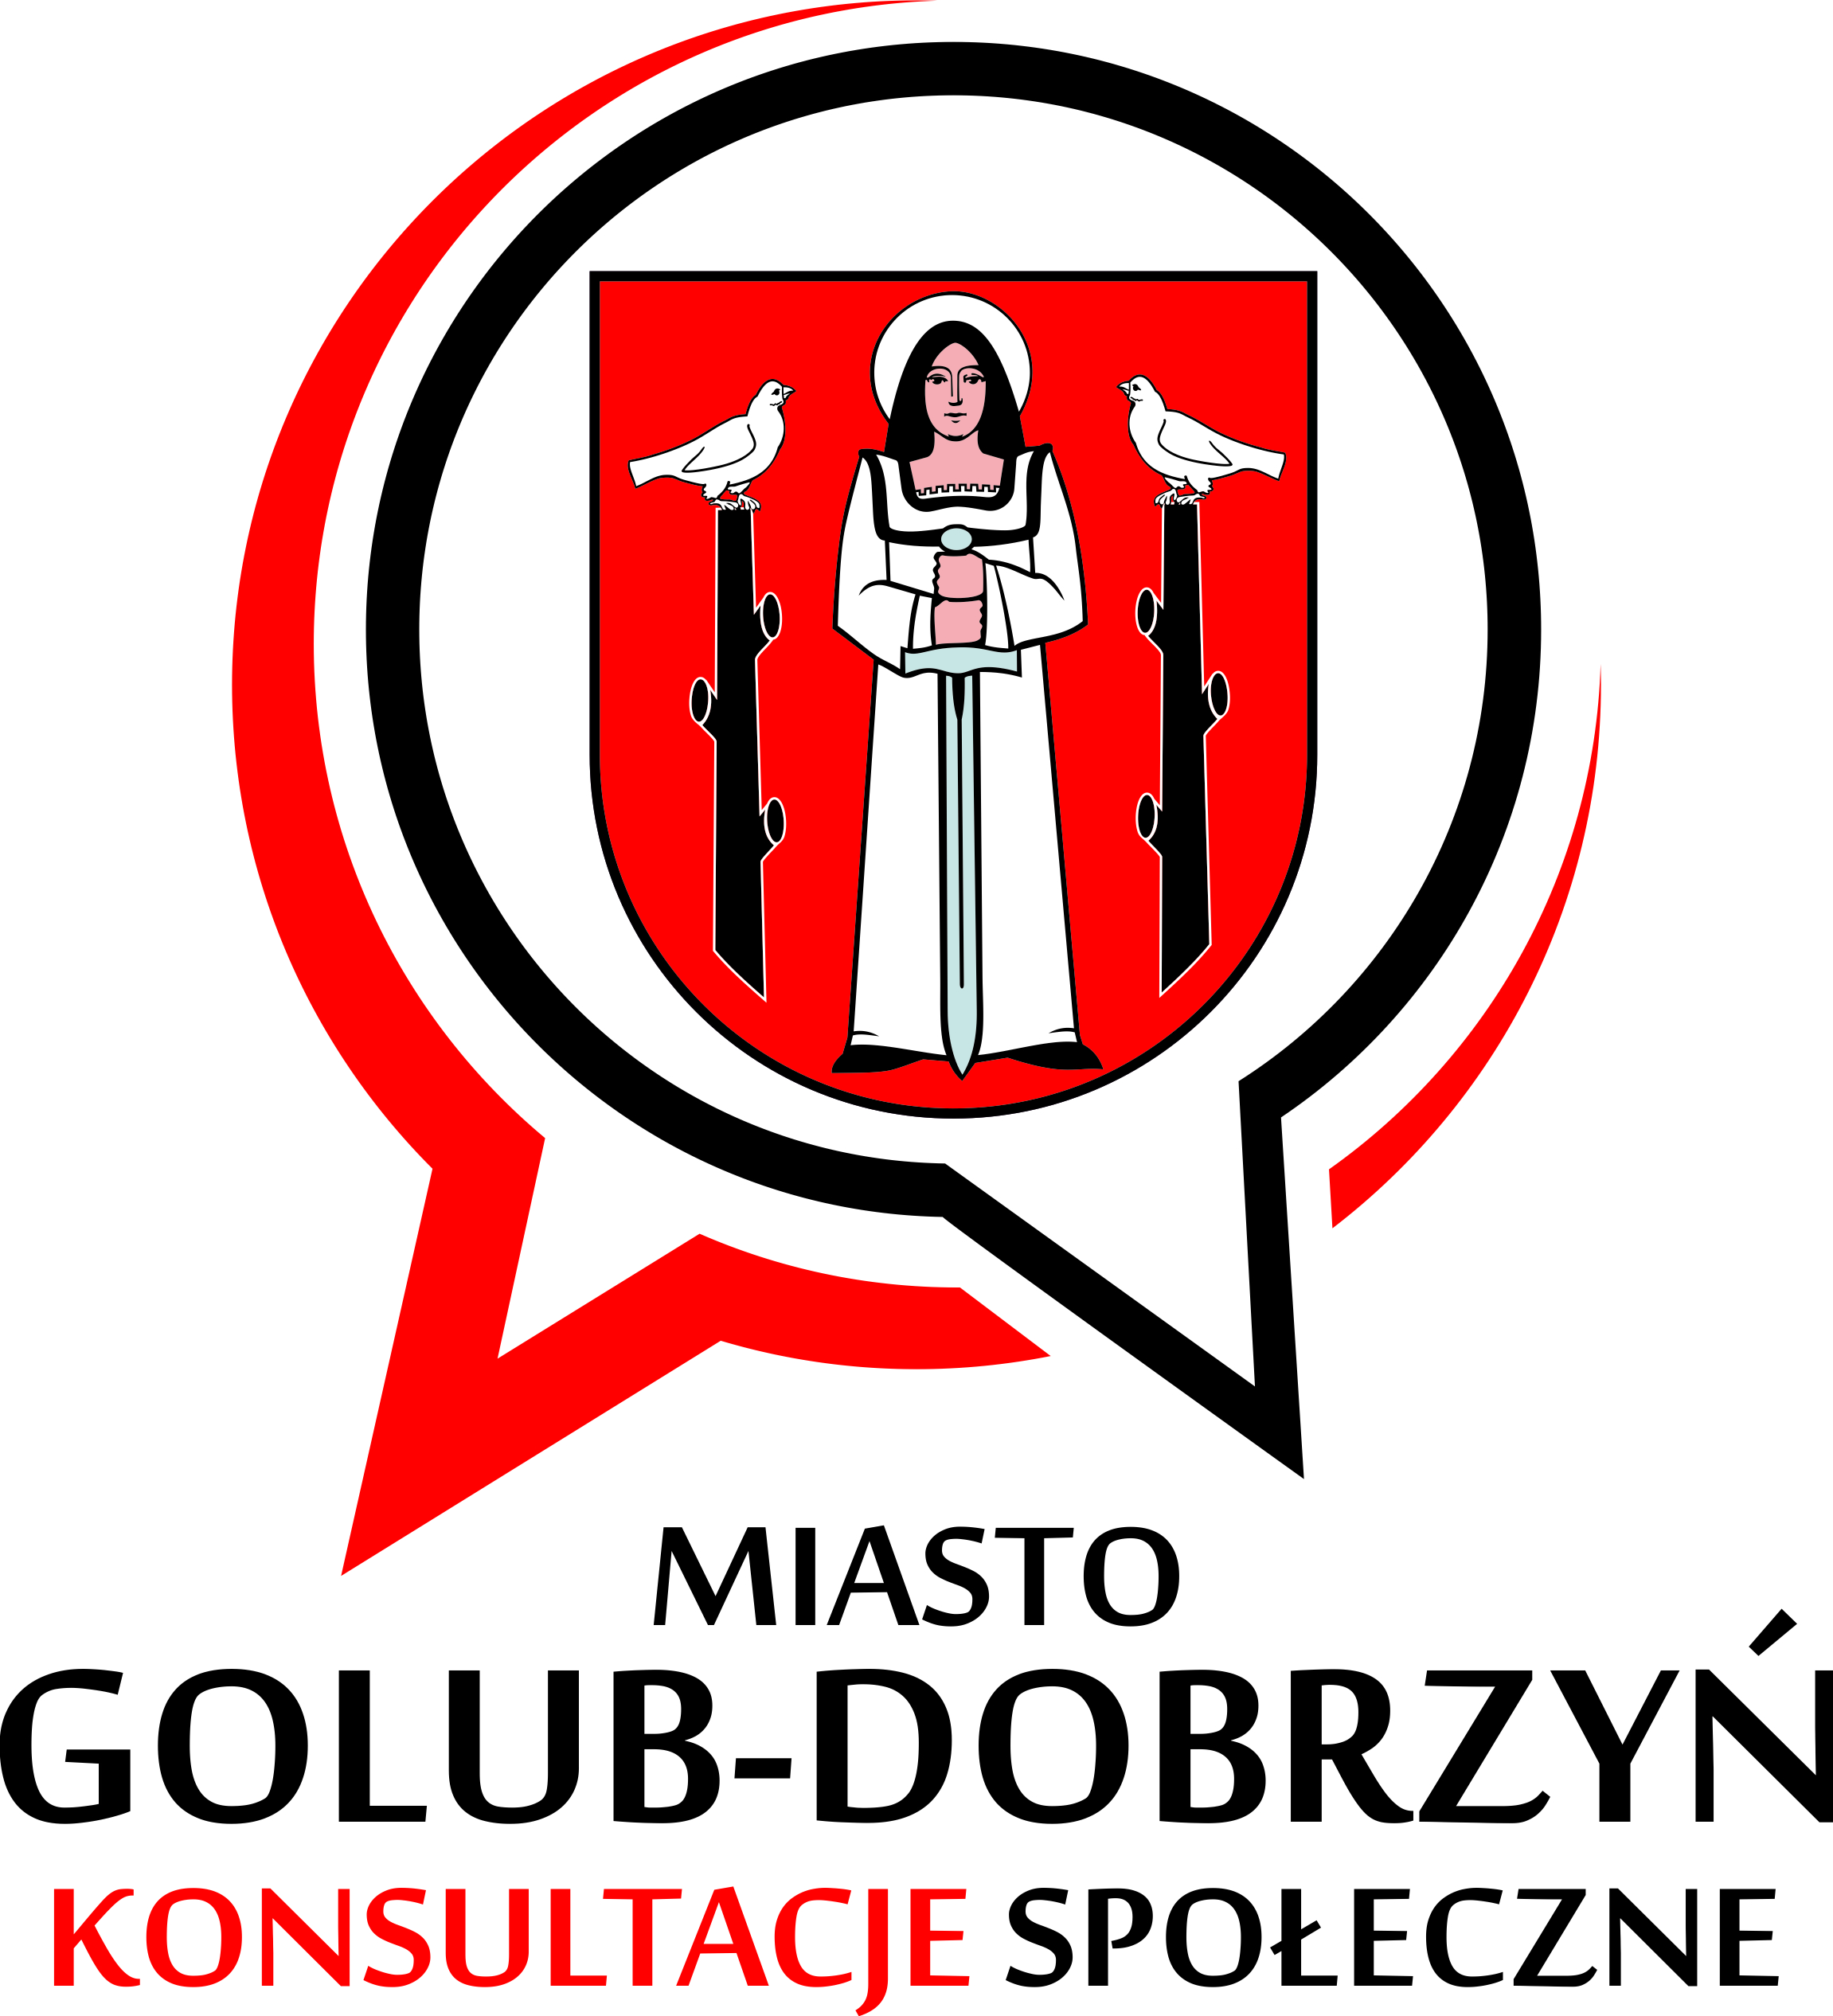 Konsultacje społeczne - Miasto Golub-Dobrzyń